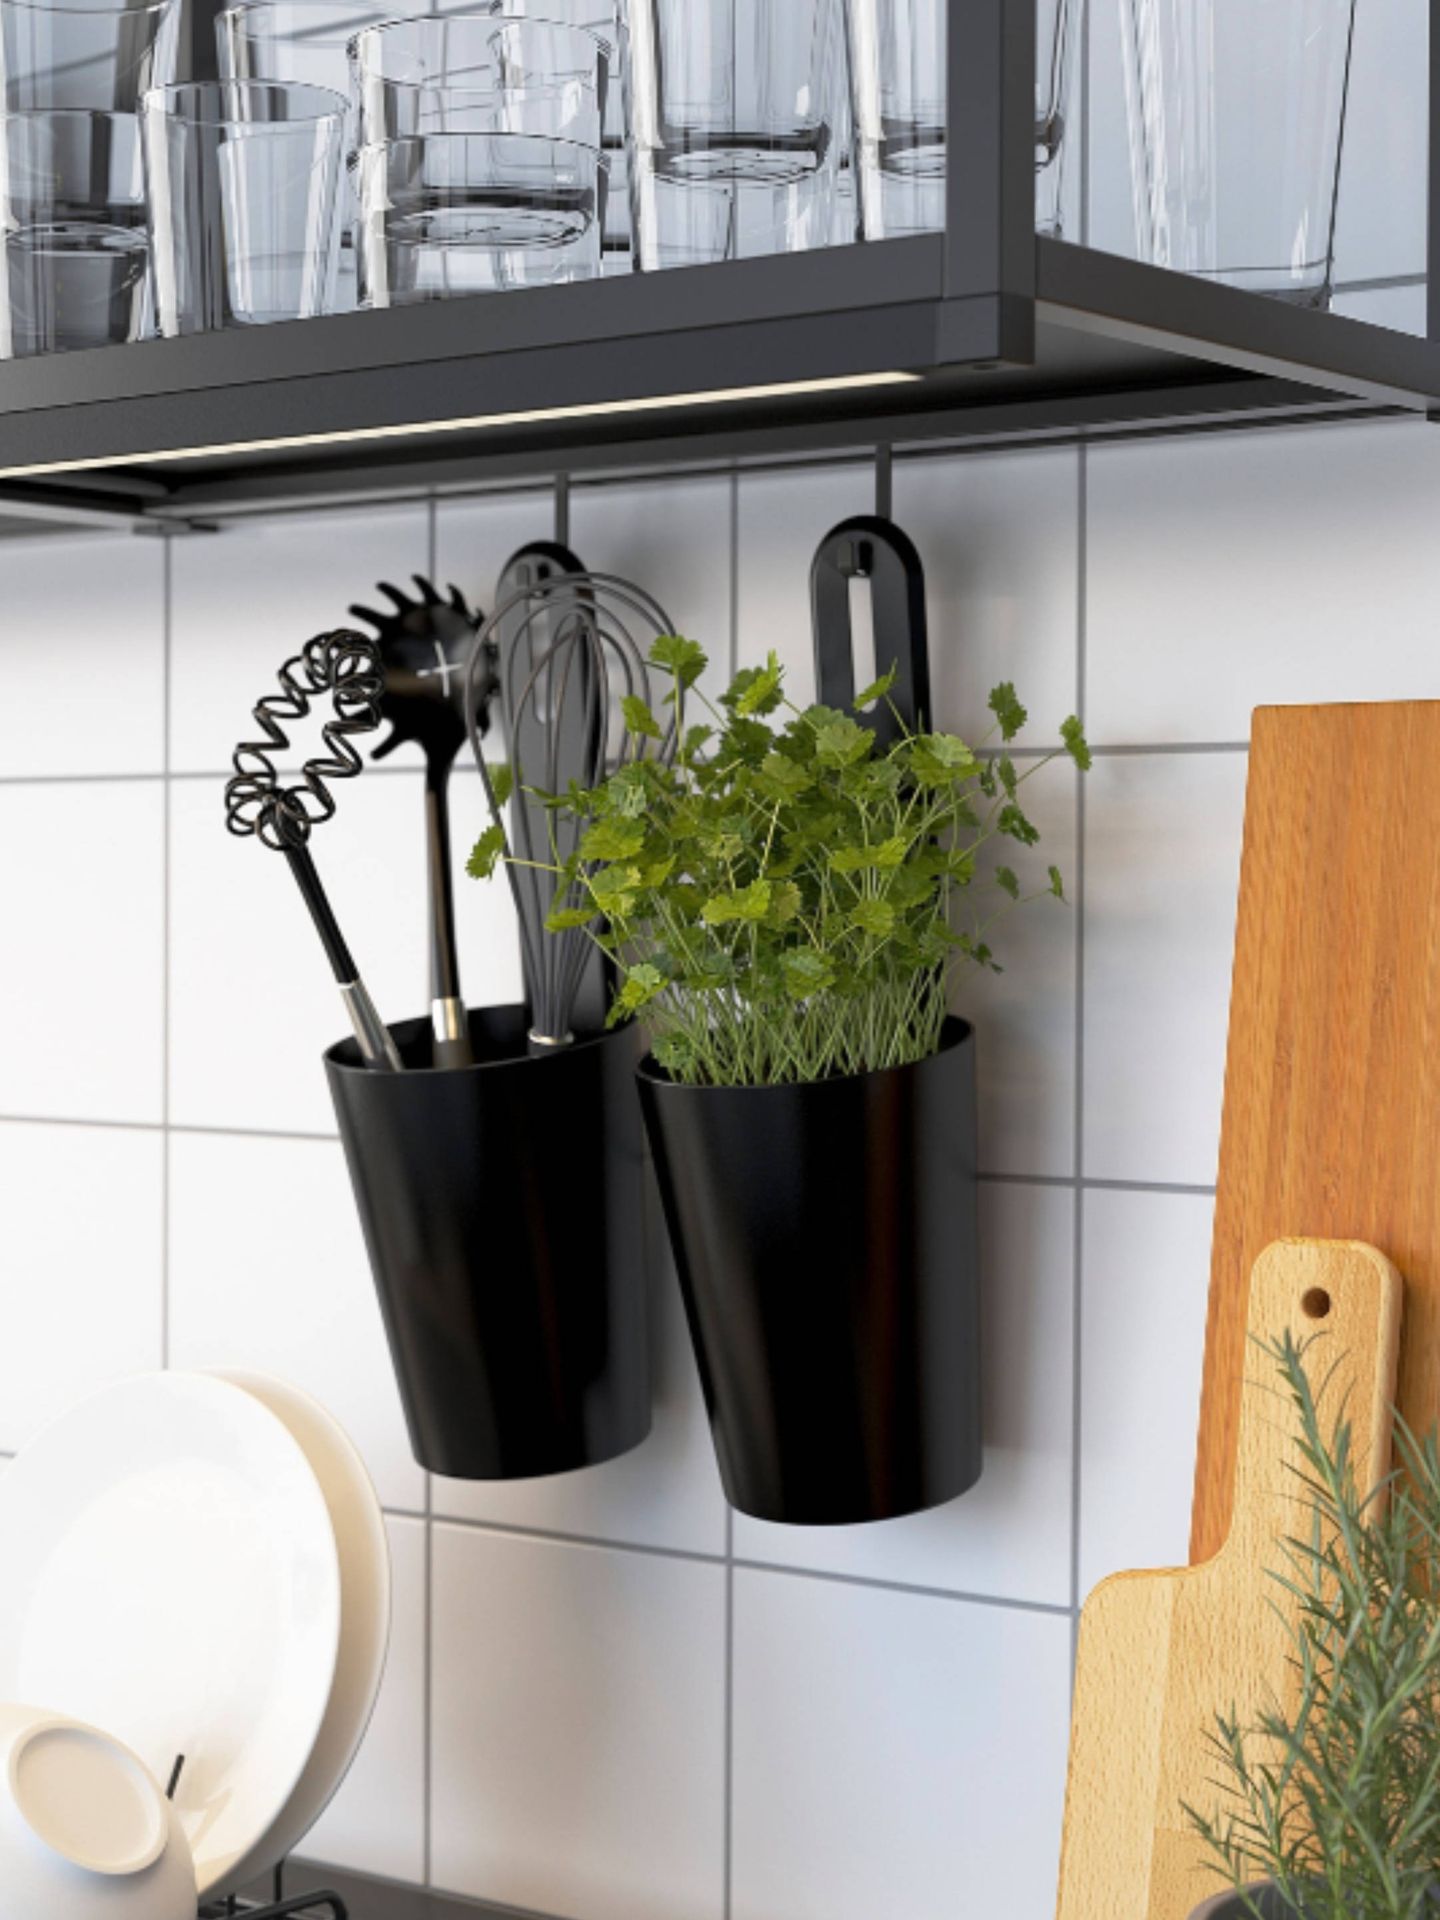 Soluciones de Ikea para ganar espacio en una cocina pequeña. (Cortesía)